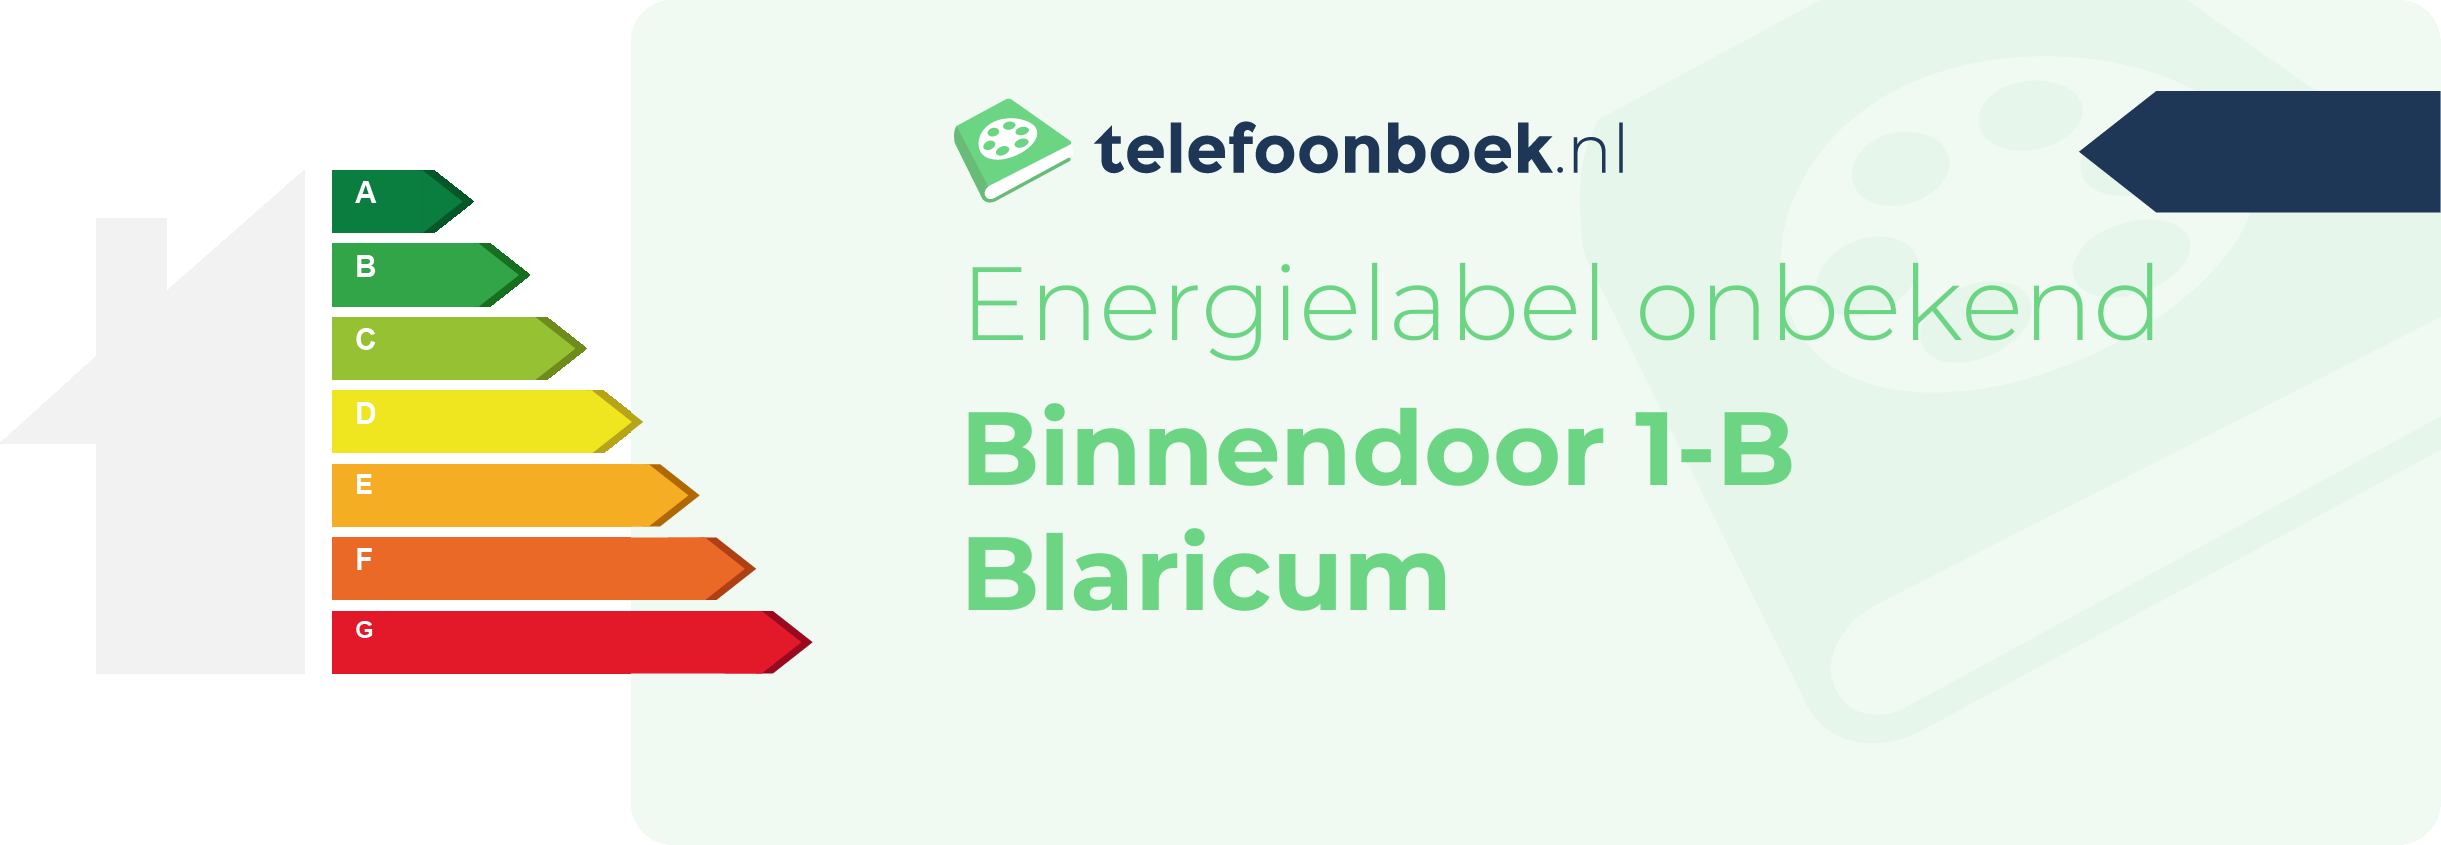 Energielabel Binnendoor 1-B Blaricum